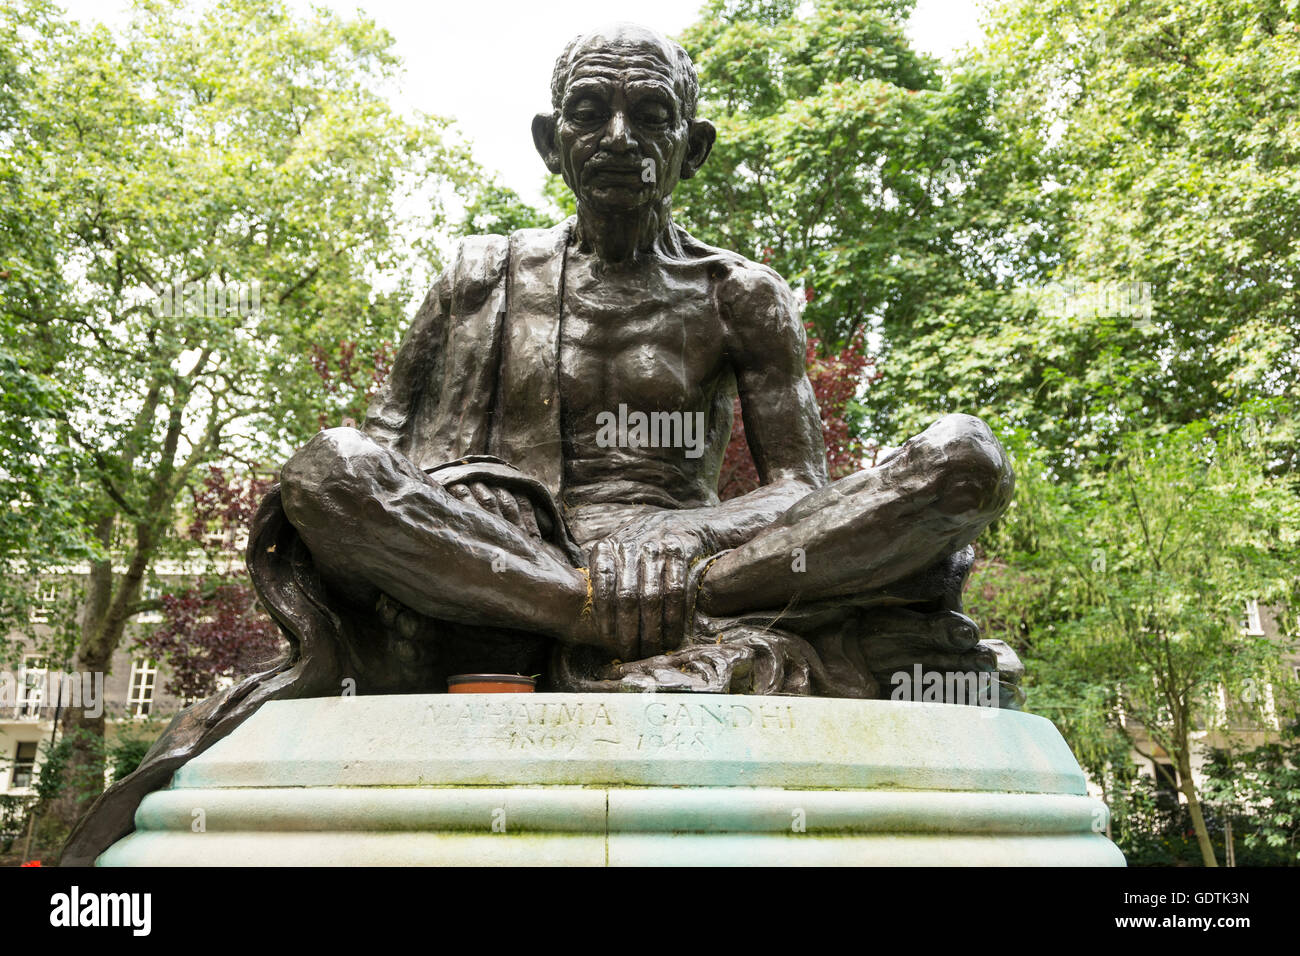 La sculpture de bronze brillant Fredda de Mahatma Gandhi à Tavistock Gardens, Tavistock Square, London, England, UK Banque D'Images